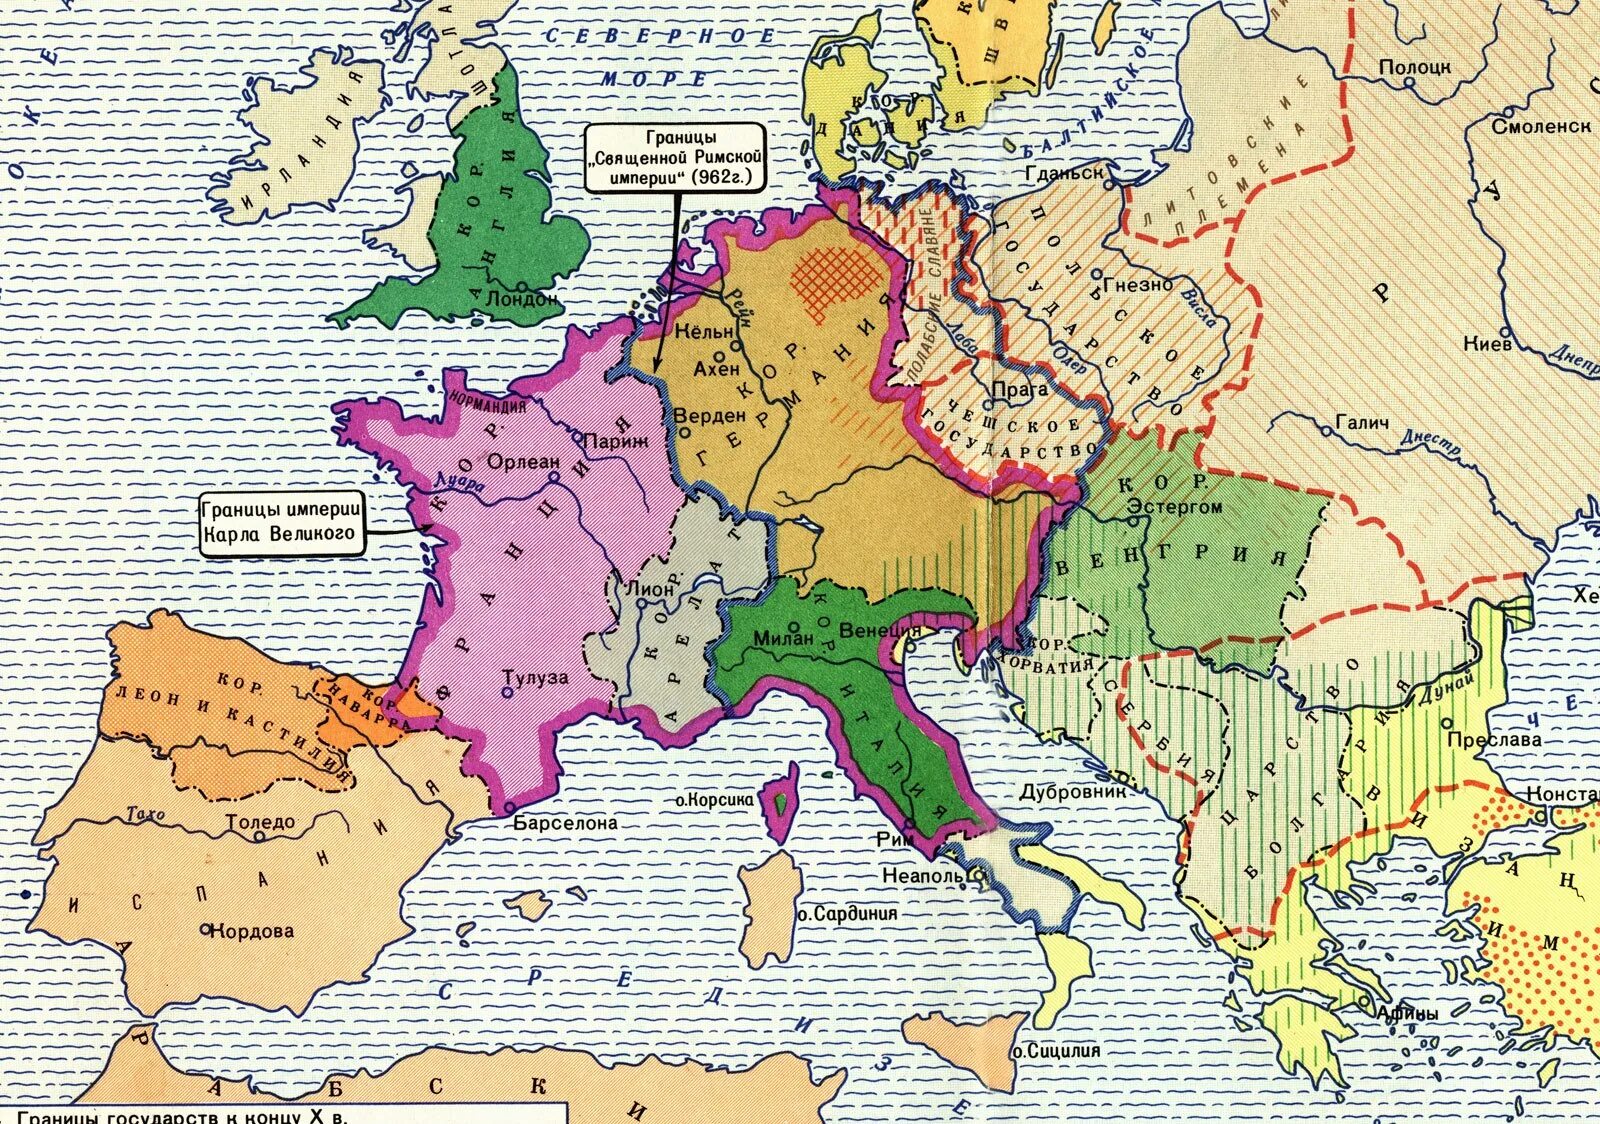 Страна пятнадцать. Западная Европа 10 век карта. Карта Европы в средние века 10 век. Карта Европы средневековья 10 век. Карта Европы средневековья 12 век.